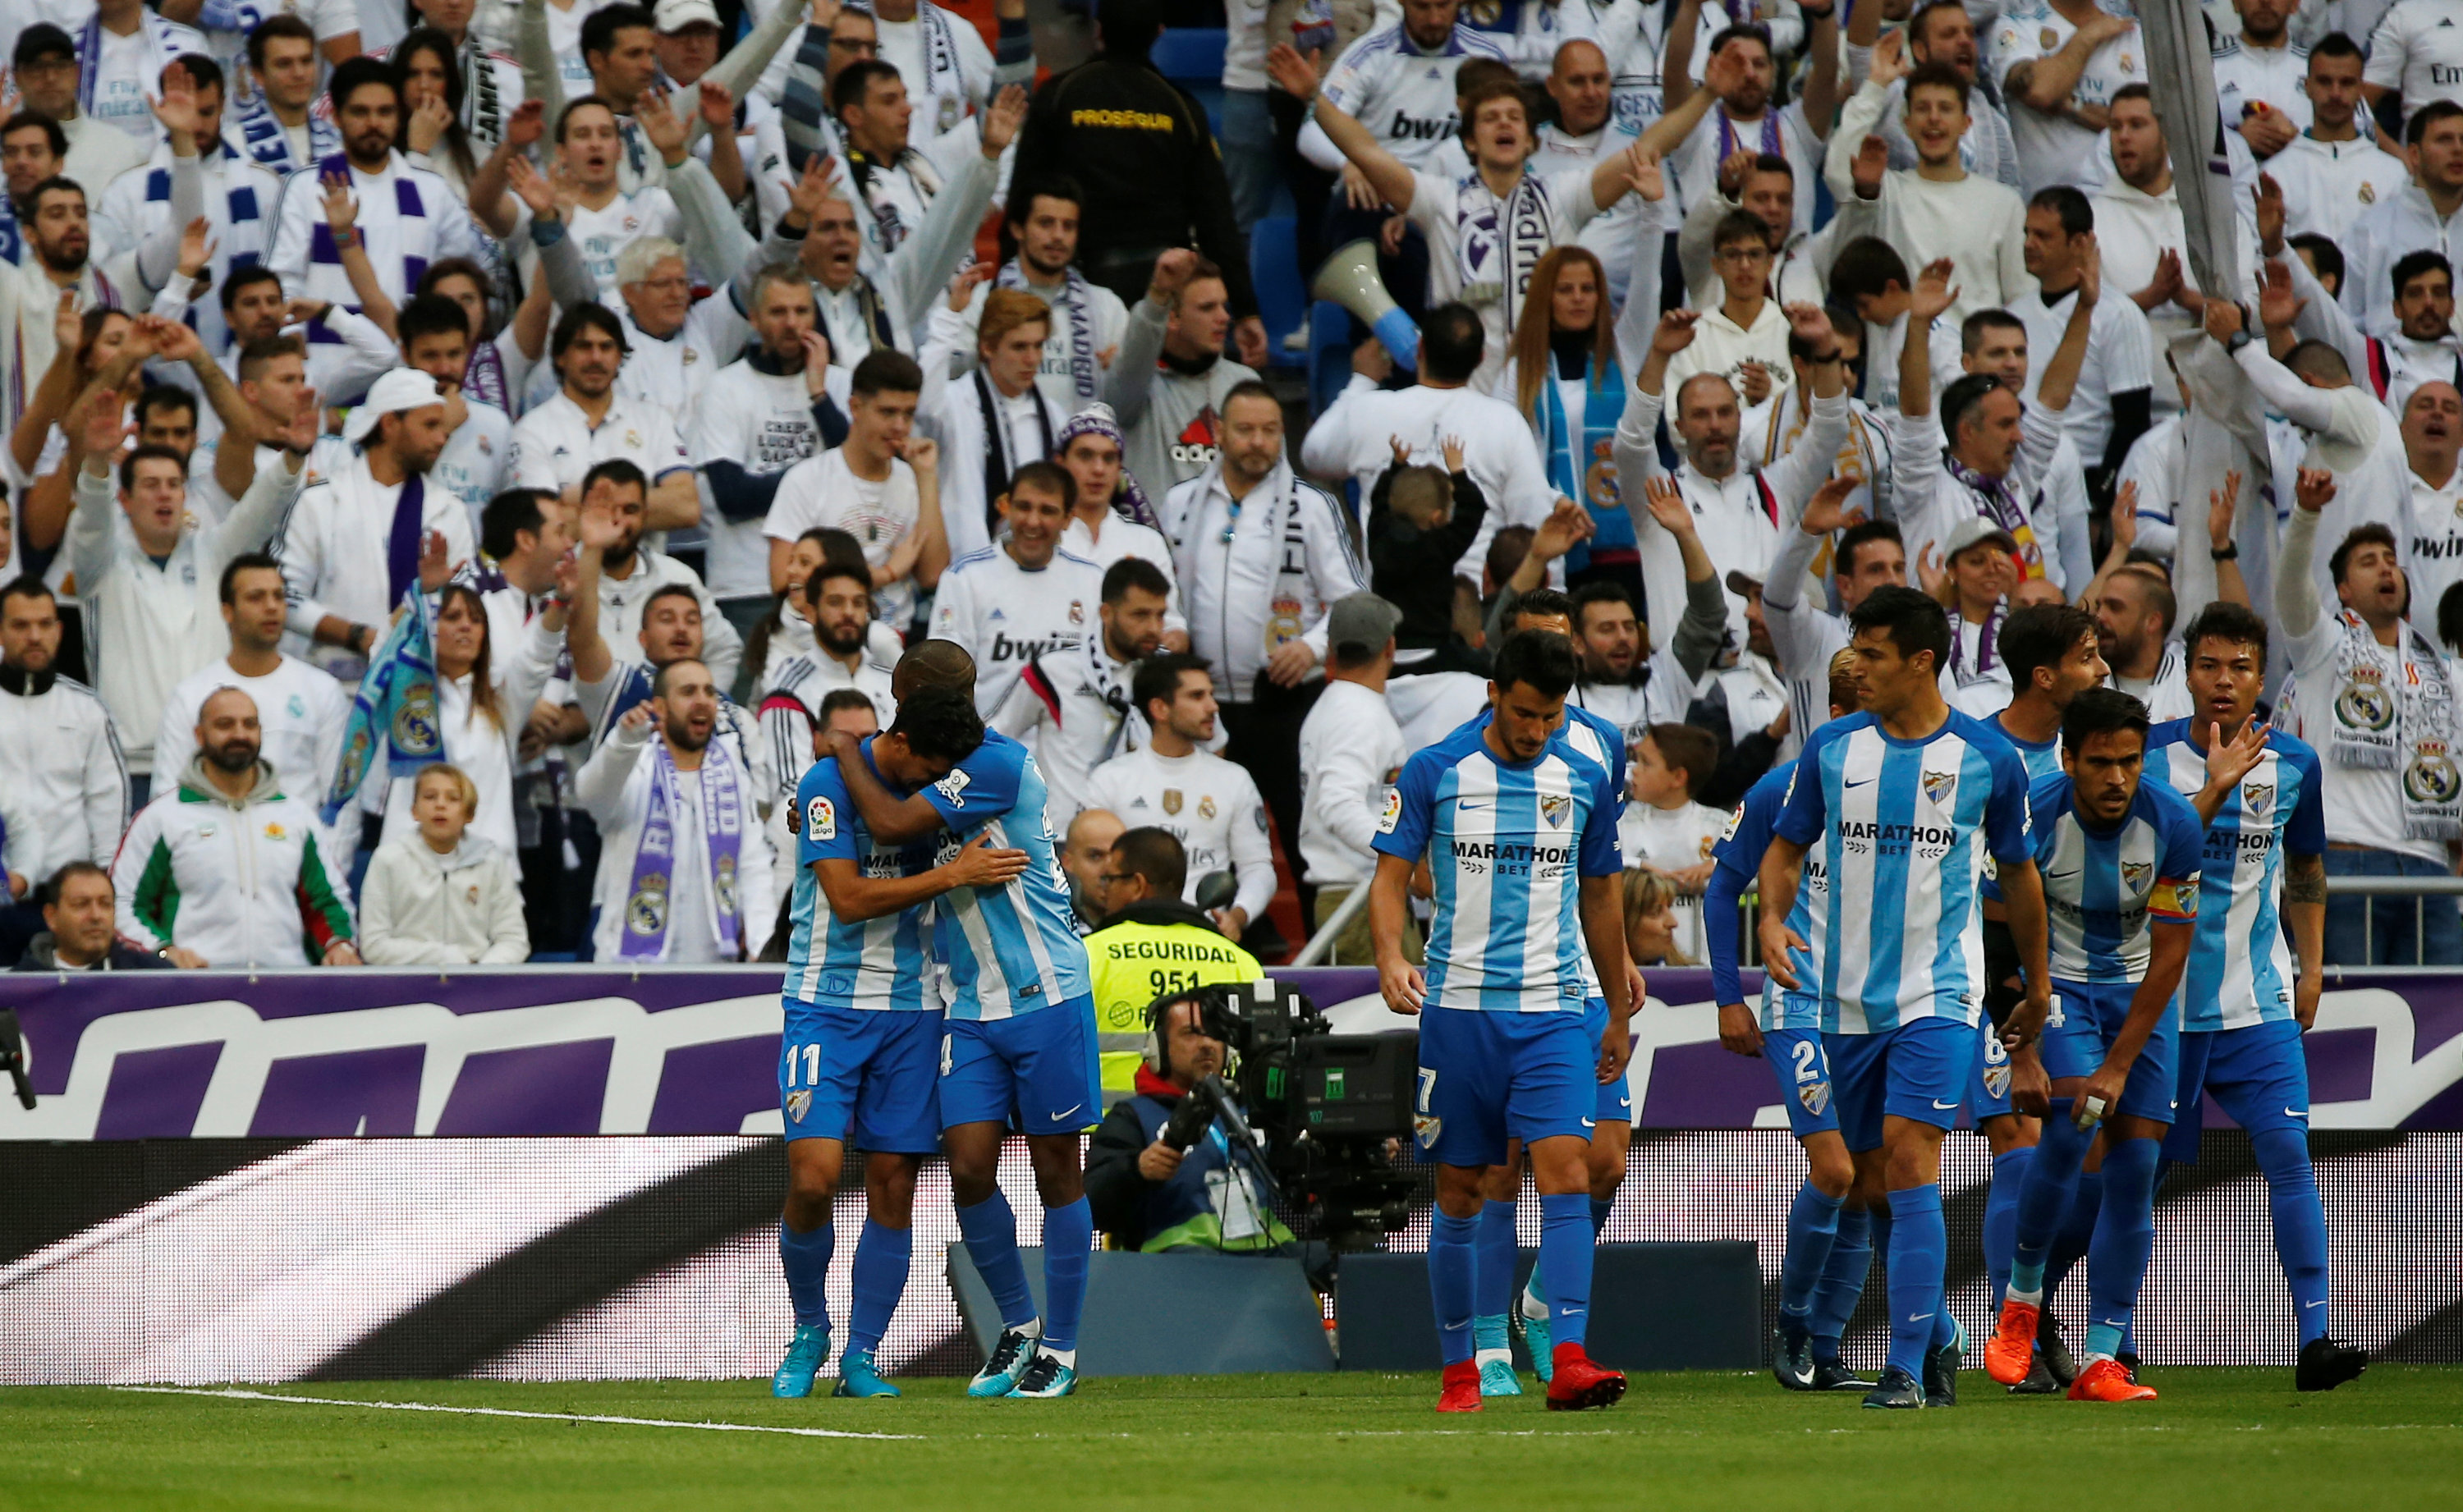 Niềm vui của các cầu thủ Malaga sau khi gỡ hòa 1-1. Ảnh: REUTERS